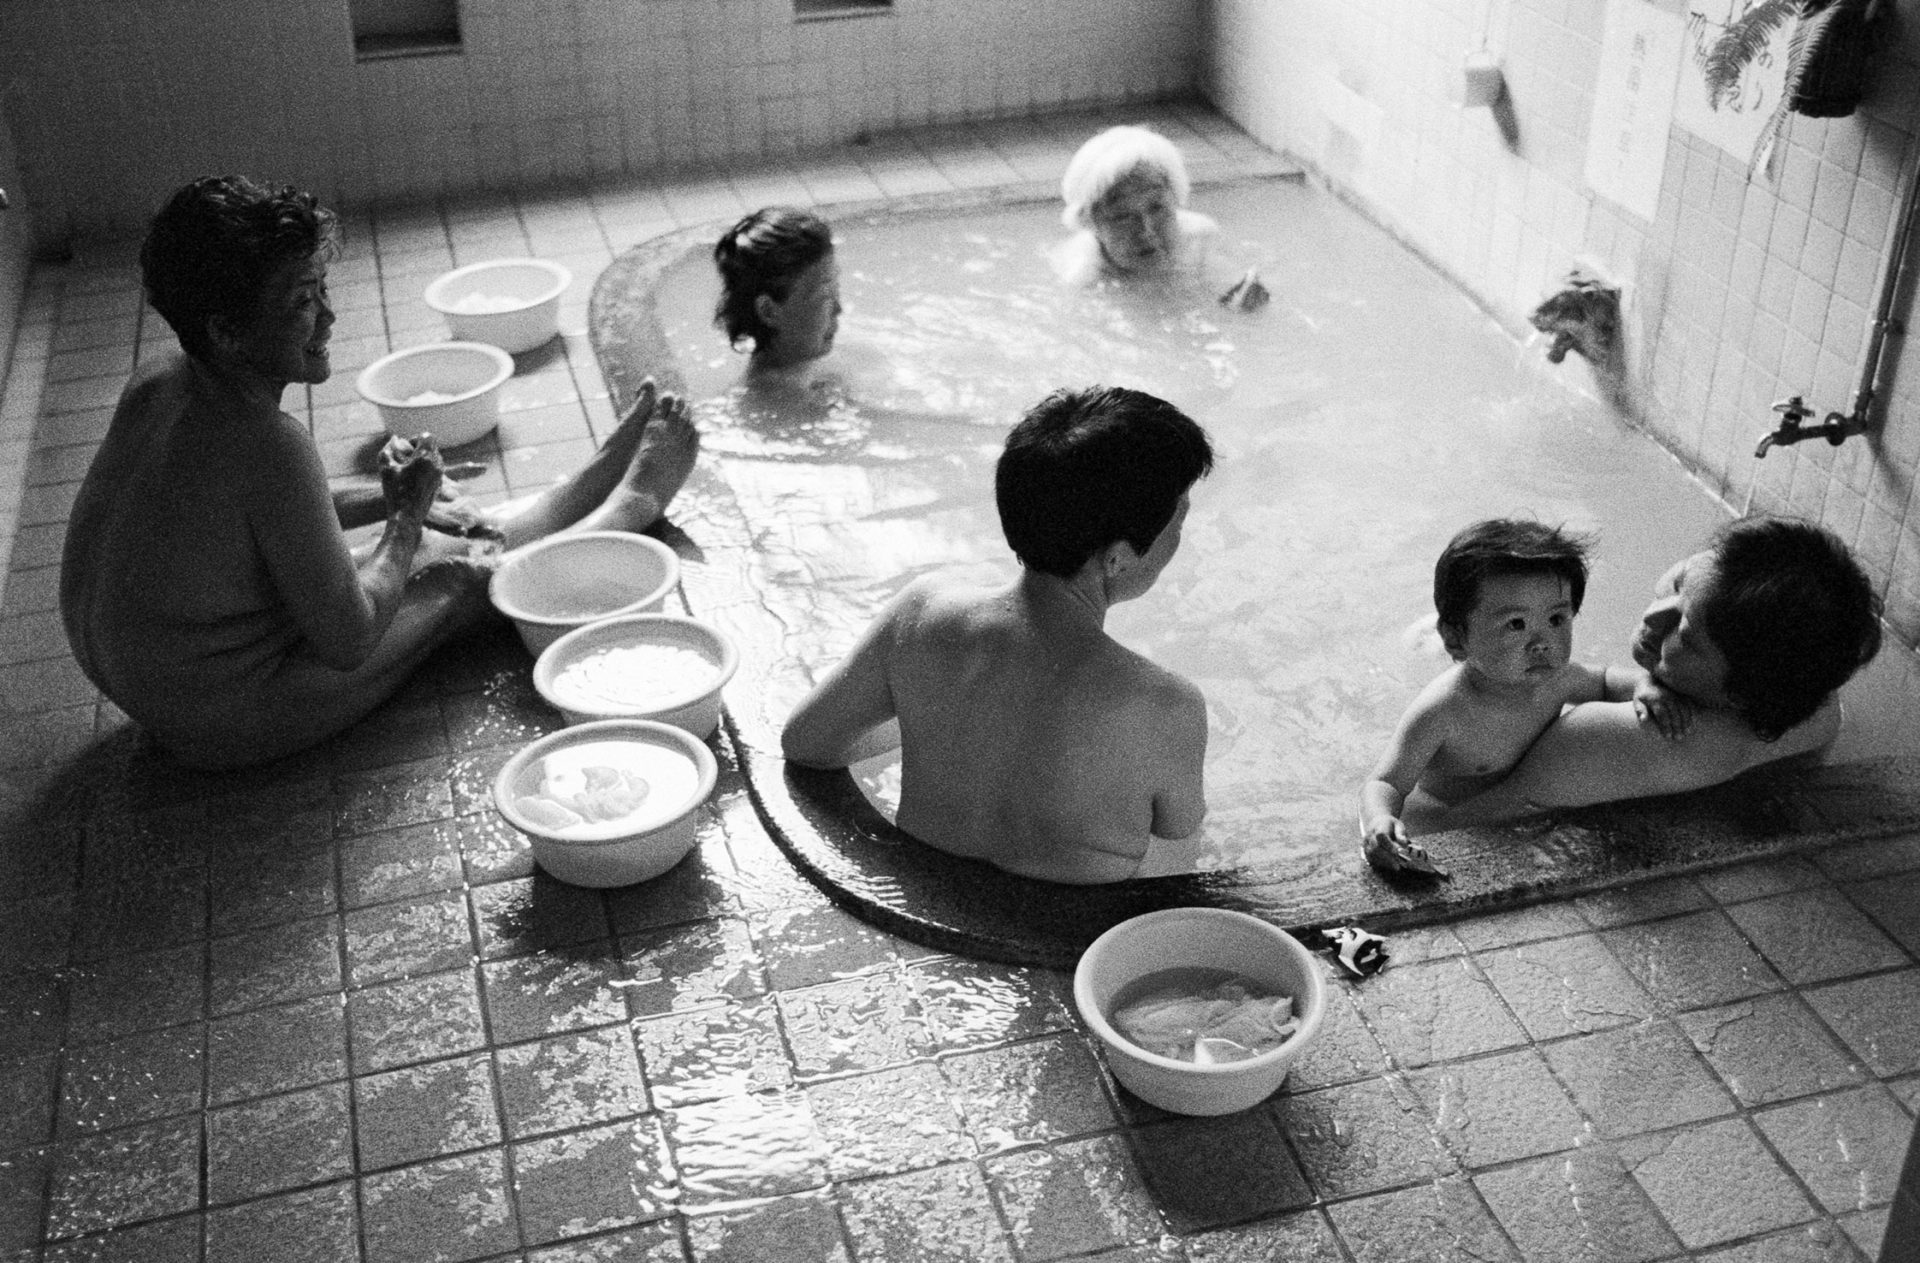  Sento, drei Generationen baden in einem Becken in einem japanischen Badehaus, Japan, Waschhaus, Ort der alltaeglichen Reinigung, heisse Quellen, Heisse Becken,
06/2005 (Sento – The Japanese Bathhouse)